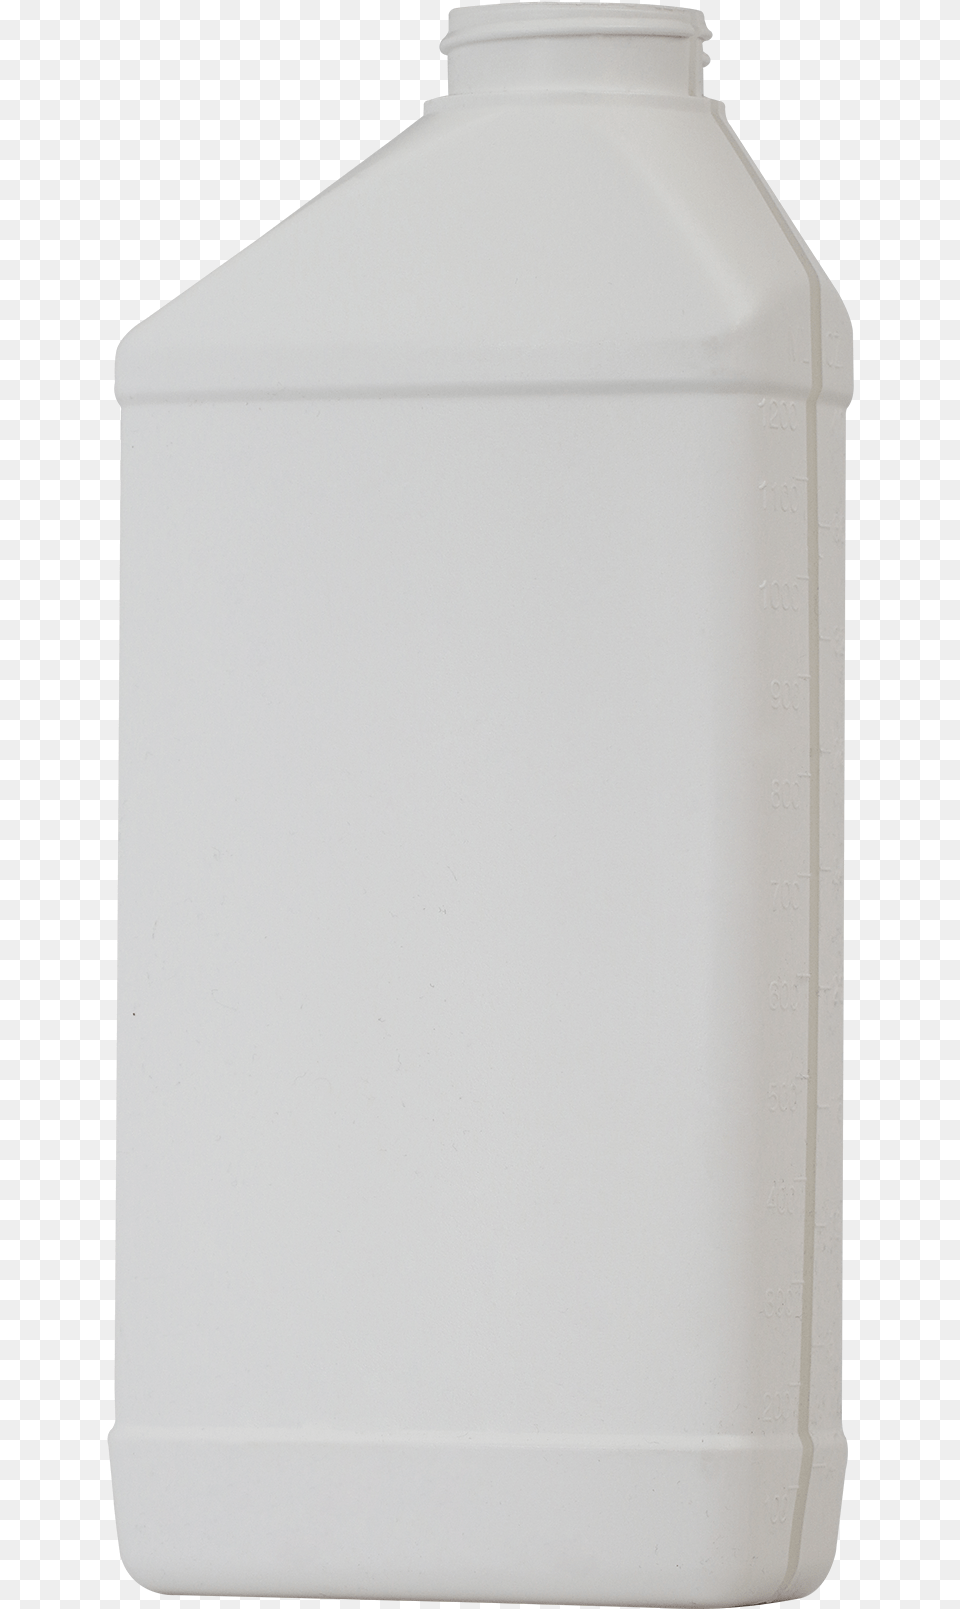 Envase De Bebida En Blanco, Jug Png Image